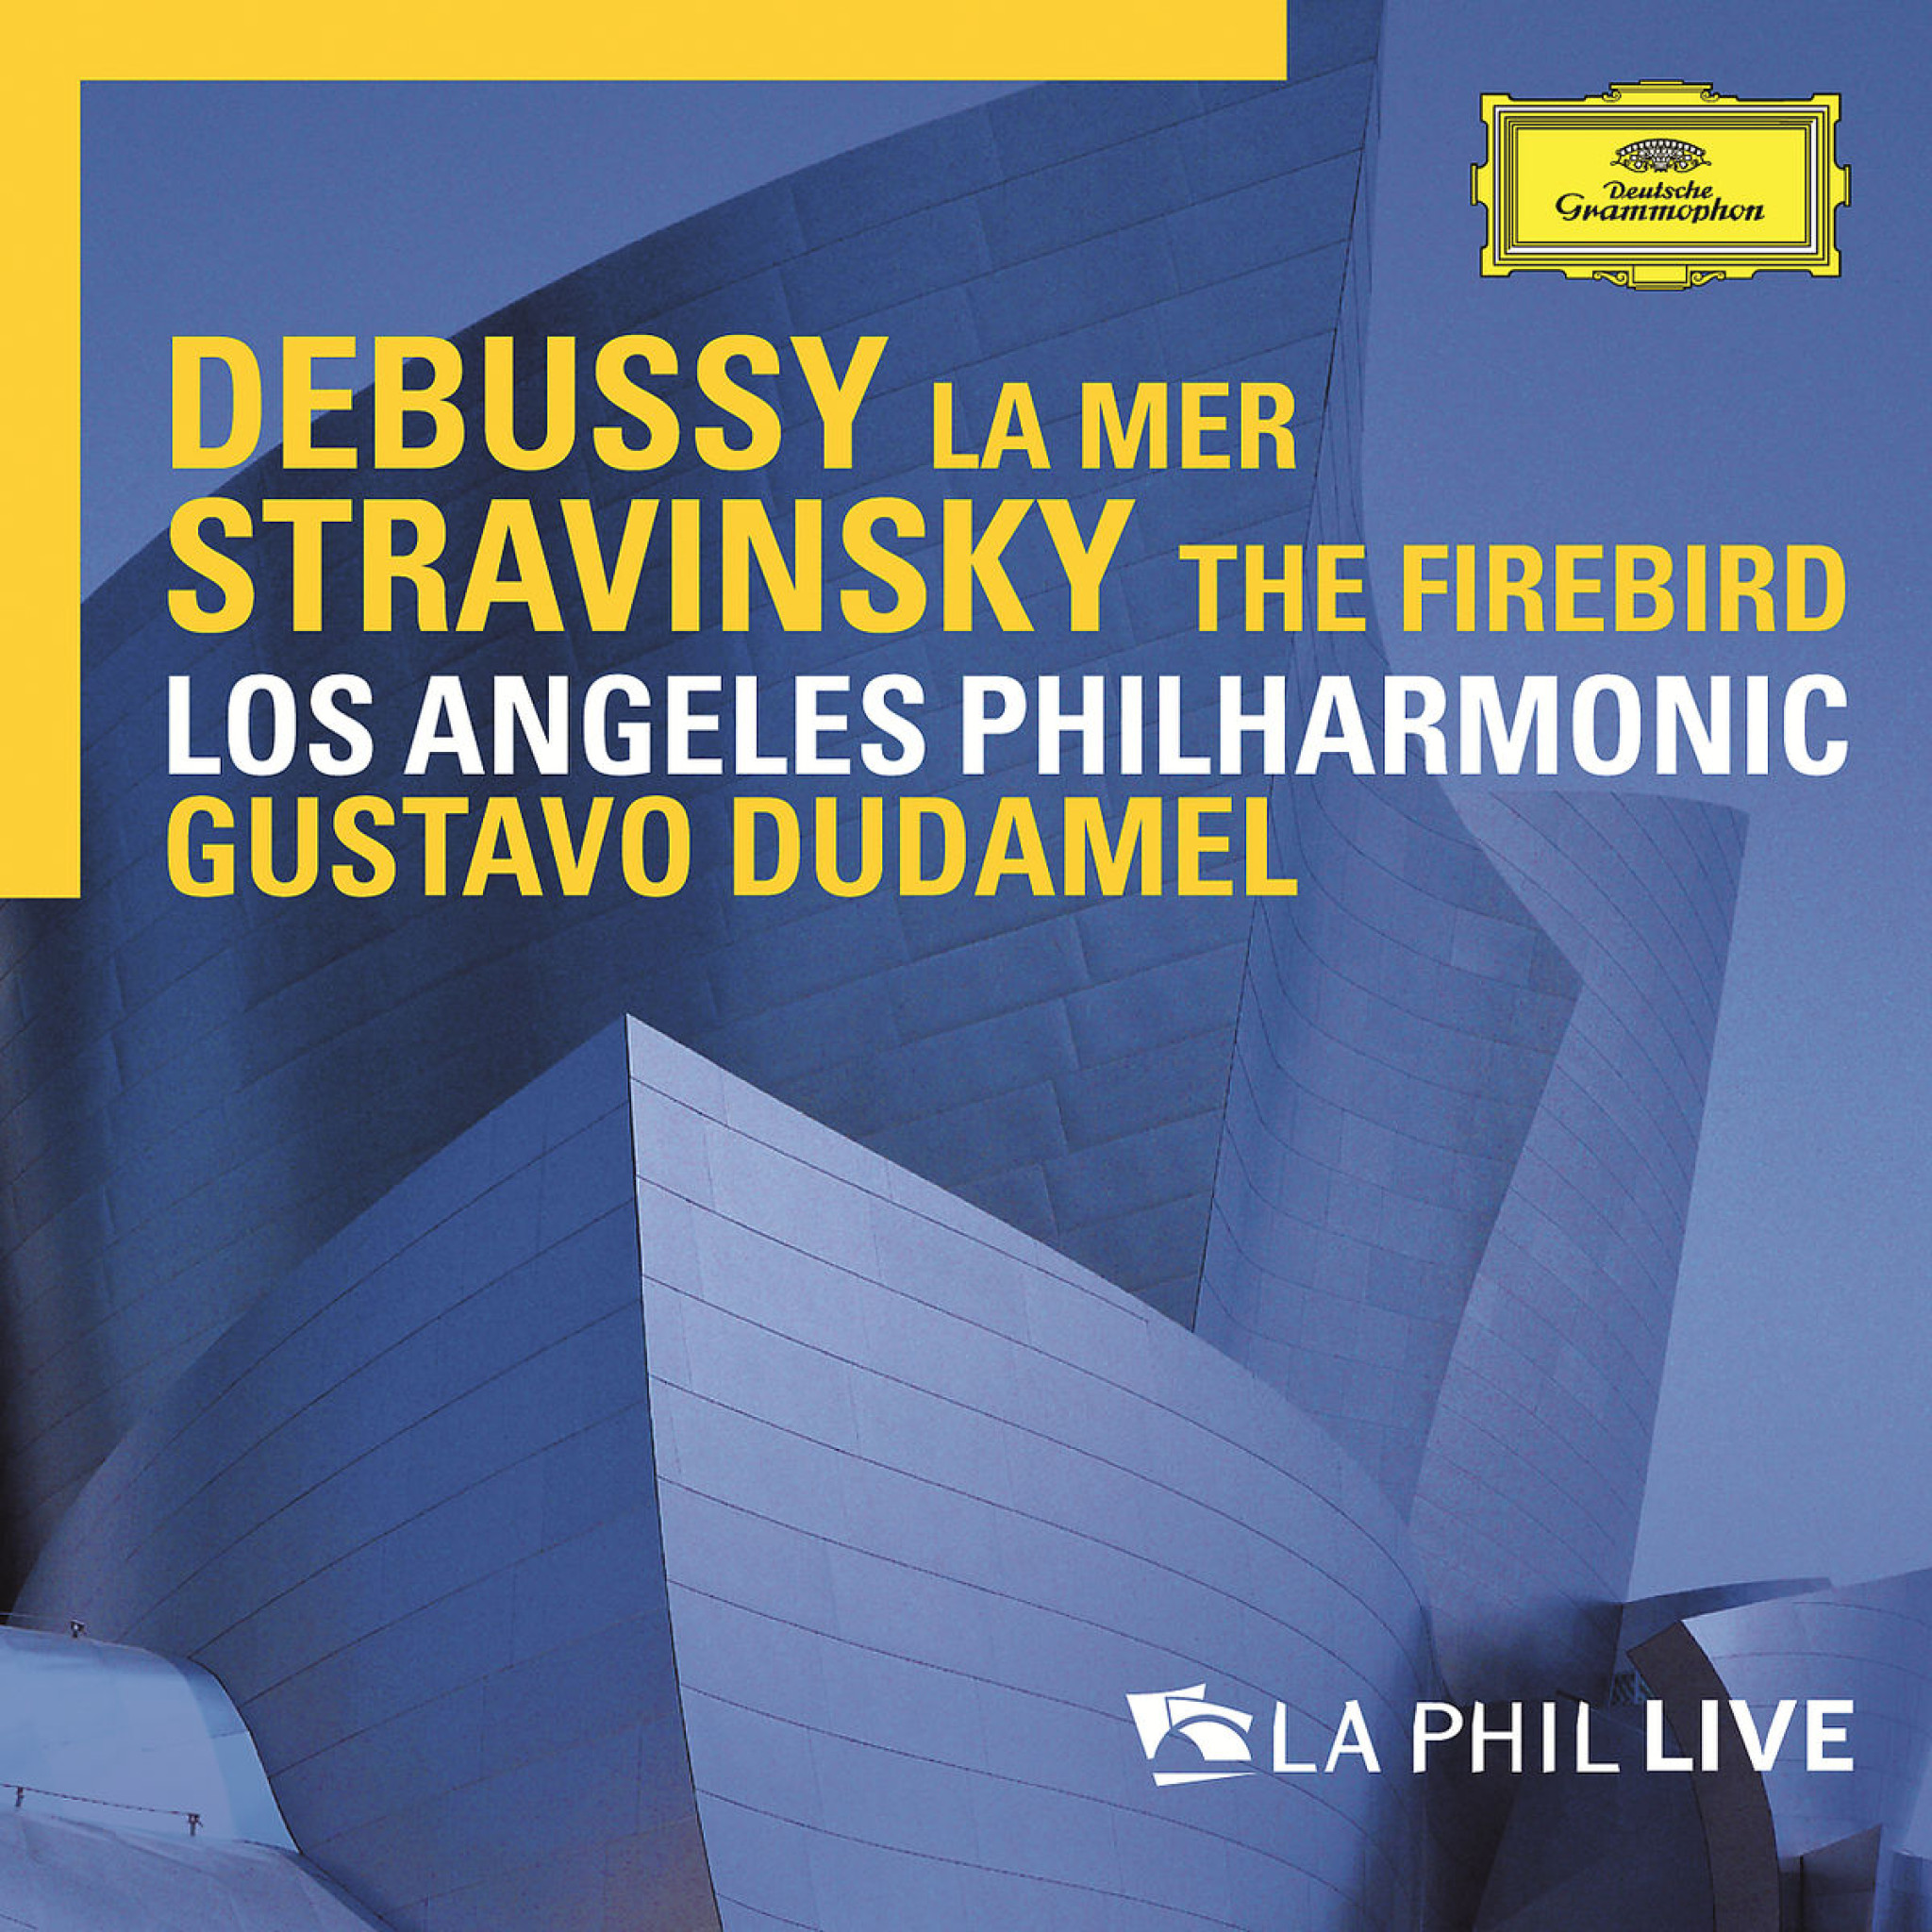 DEBUSSY, STRAVINSKY / Dudamel LA PHIL LIVE